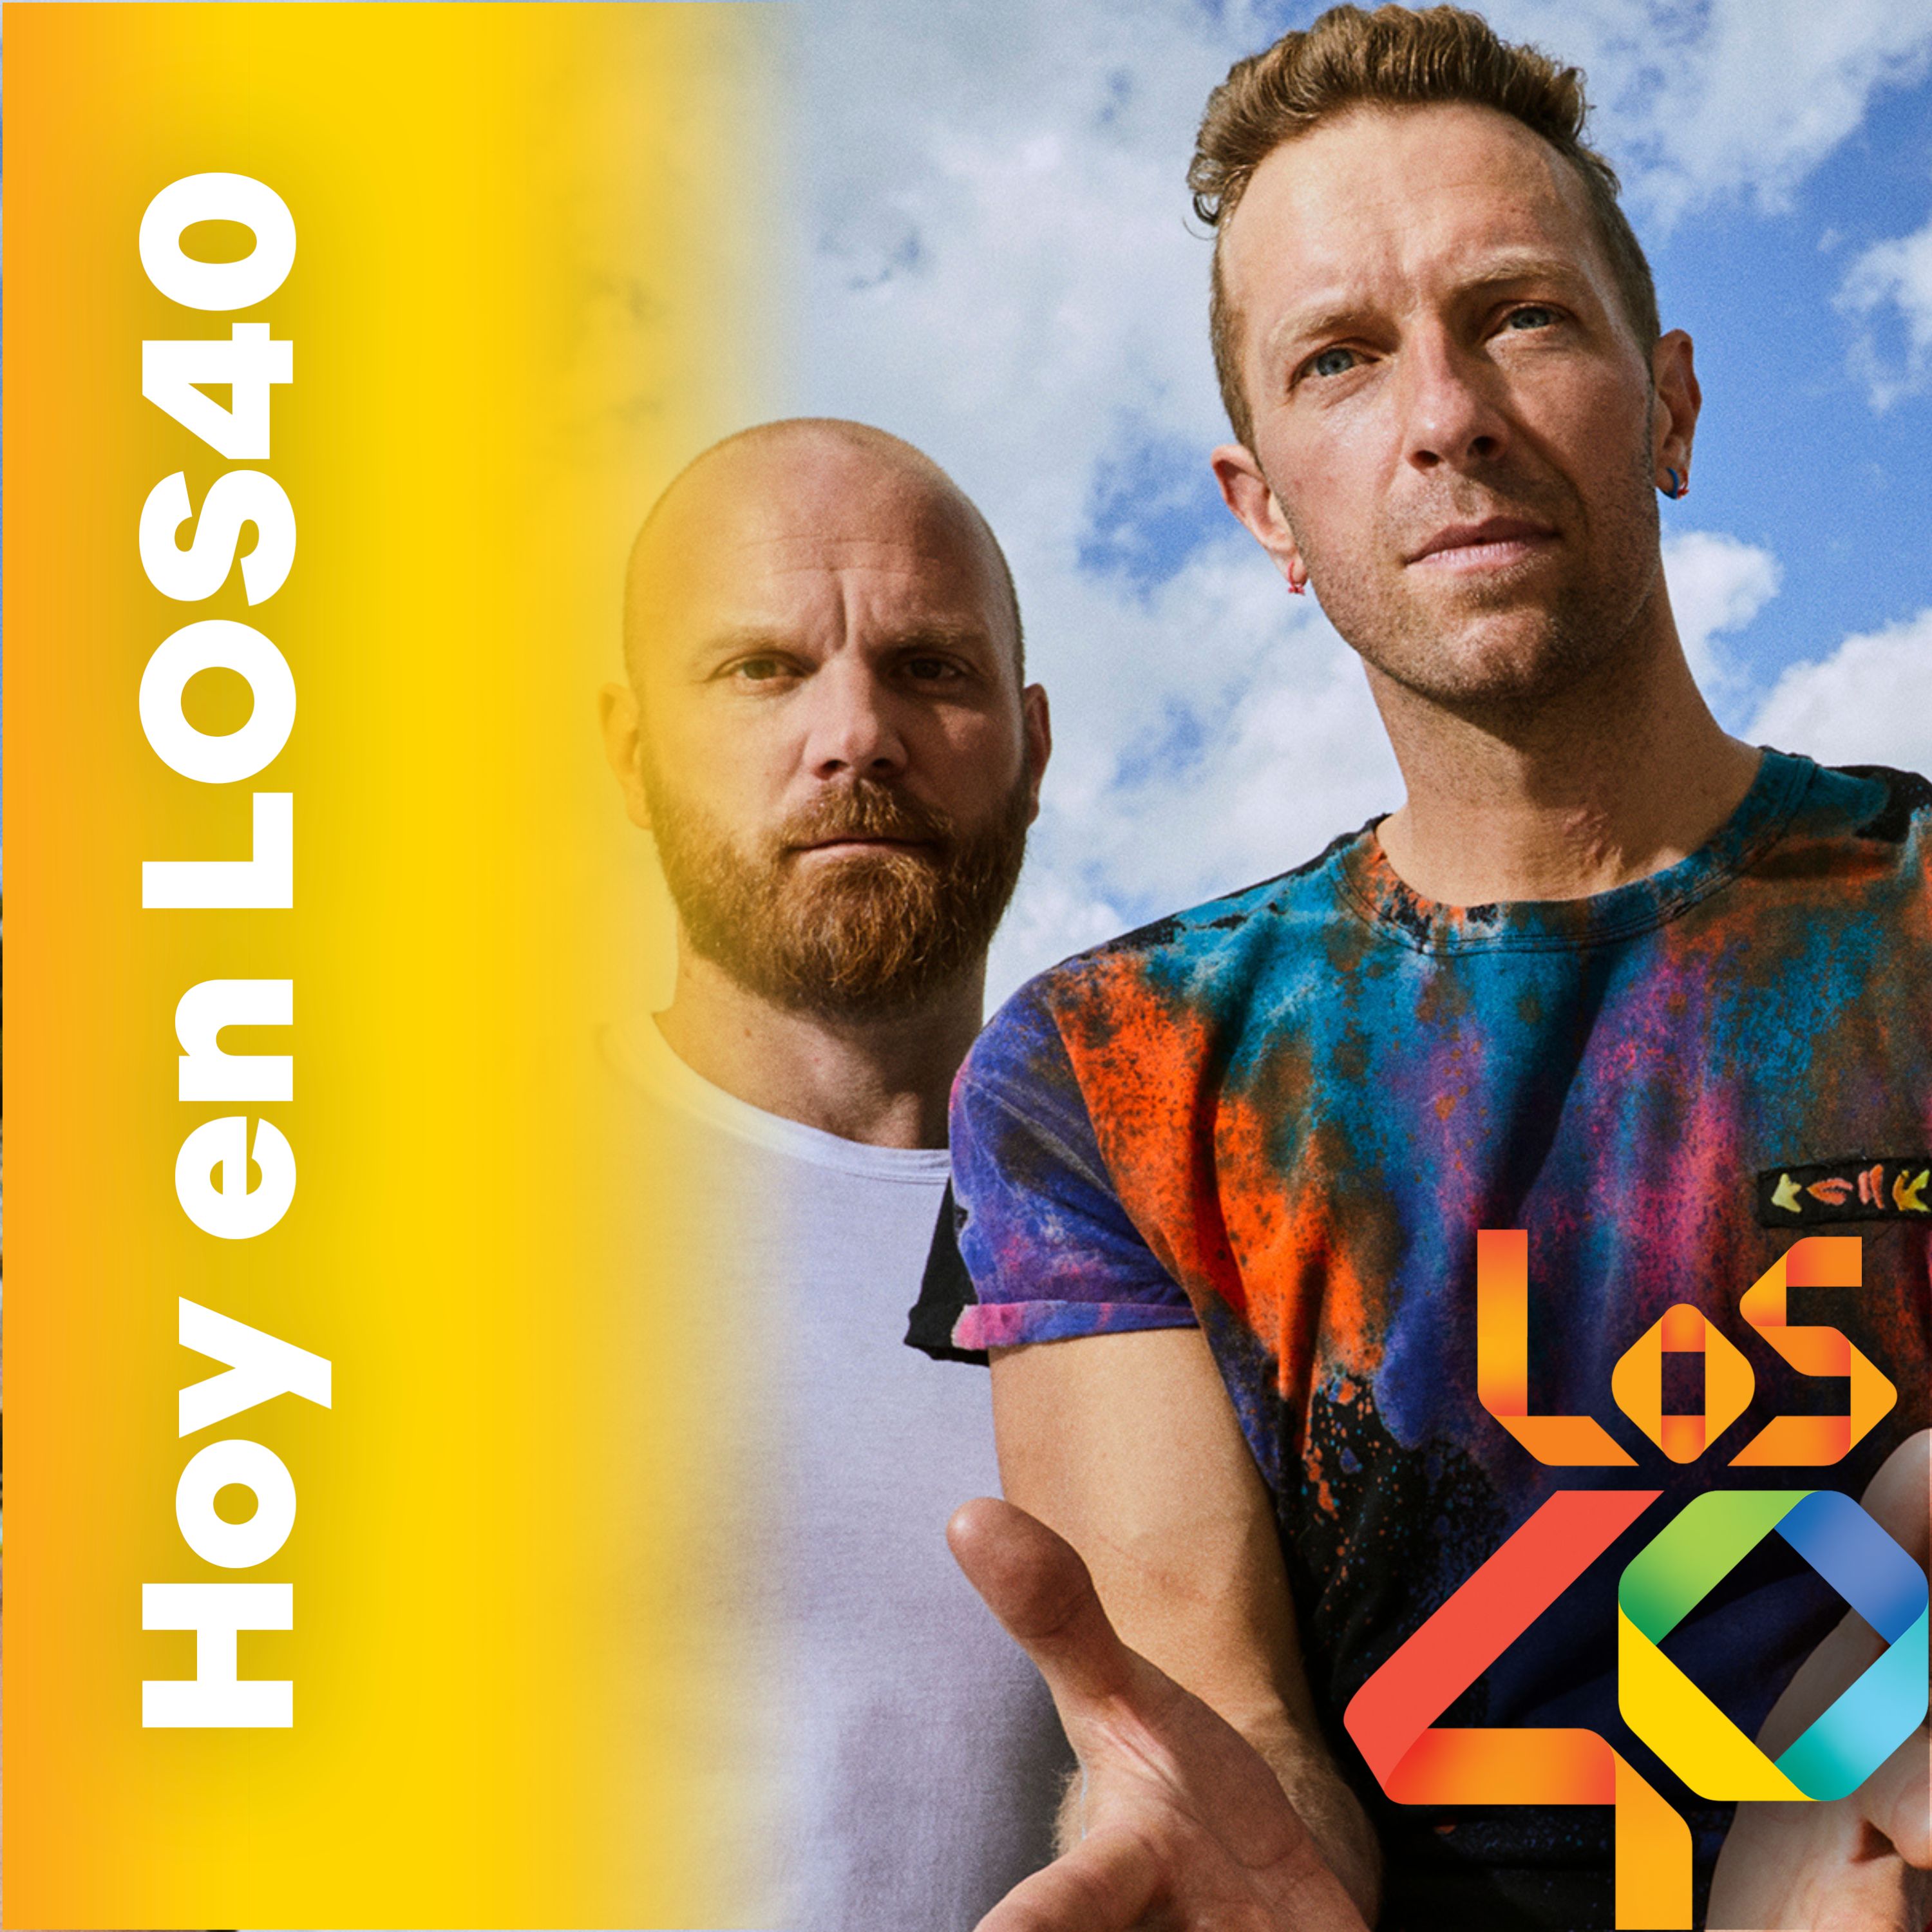 Tony Aguilar entrevista en exclusiva a Coldplay - Noticias del 5 de junio 